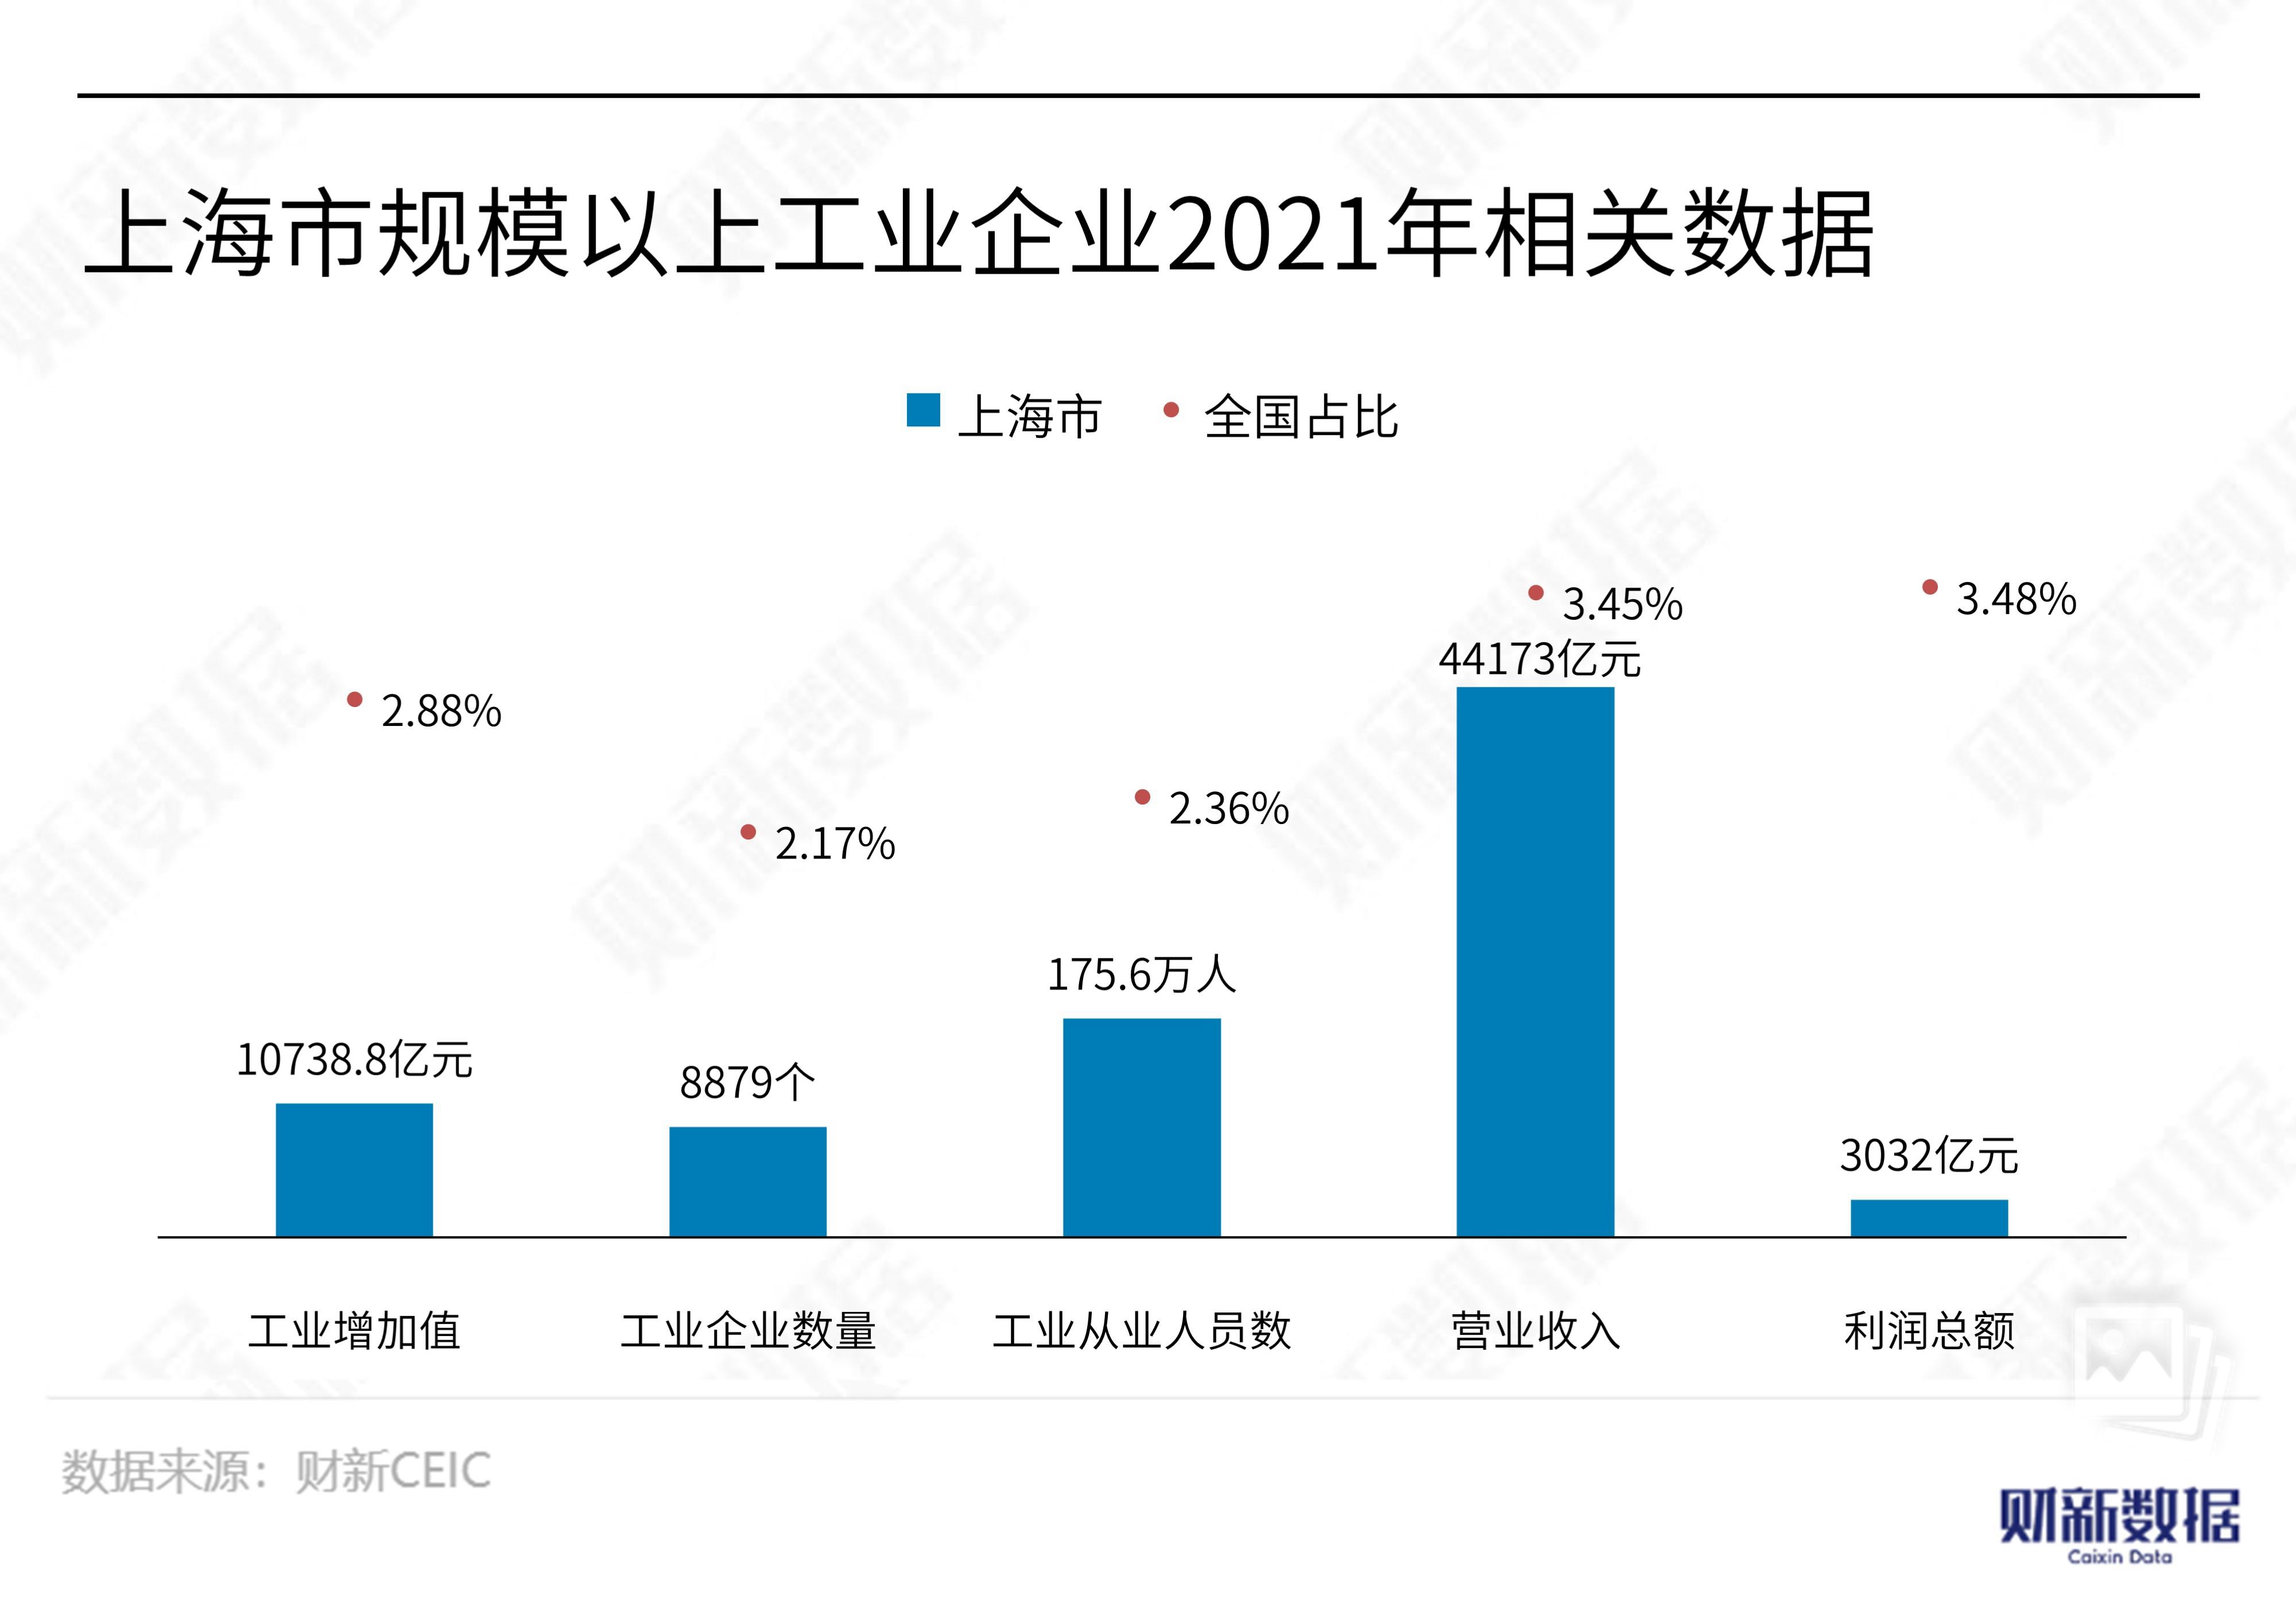 【数据图解】上海市仅不足1/8的规上企业保持封闭生产状态